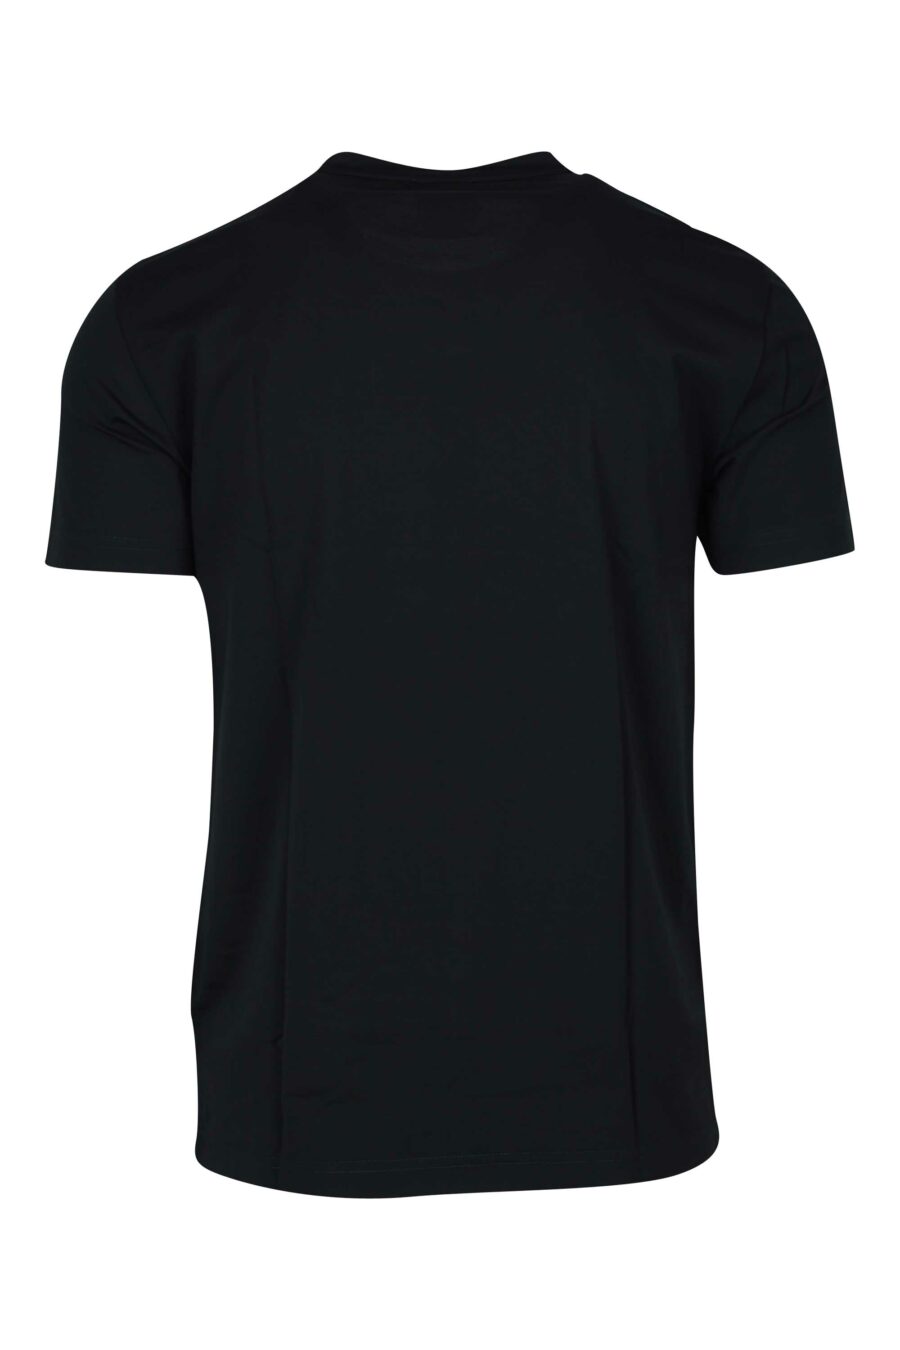 Camiseta negra con minilogo "lux identity" escudo - 8056787978973 1